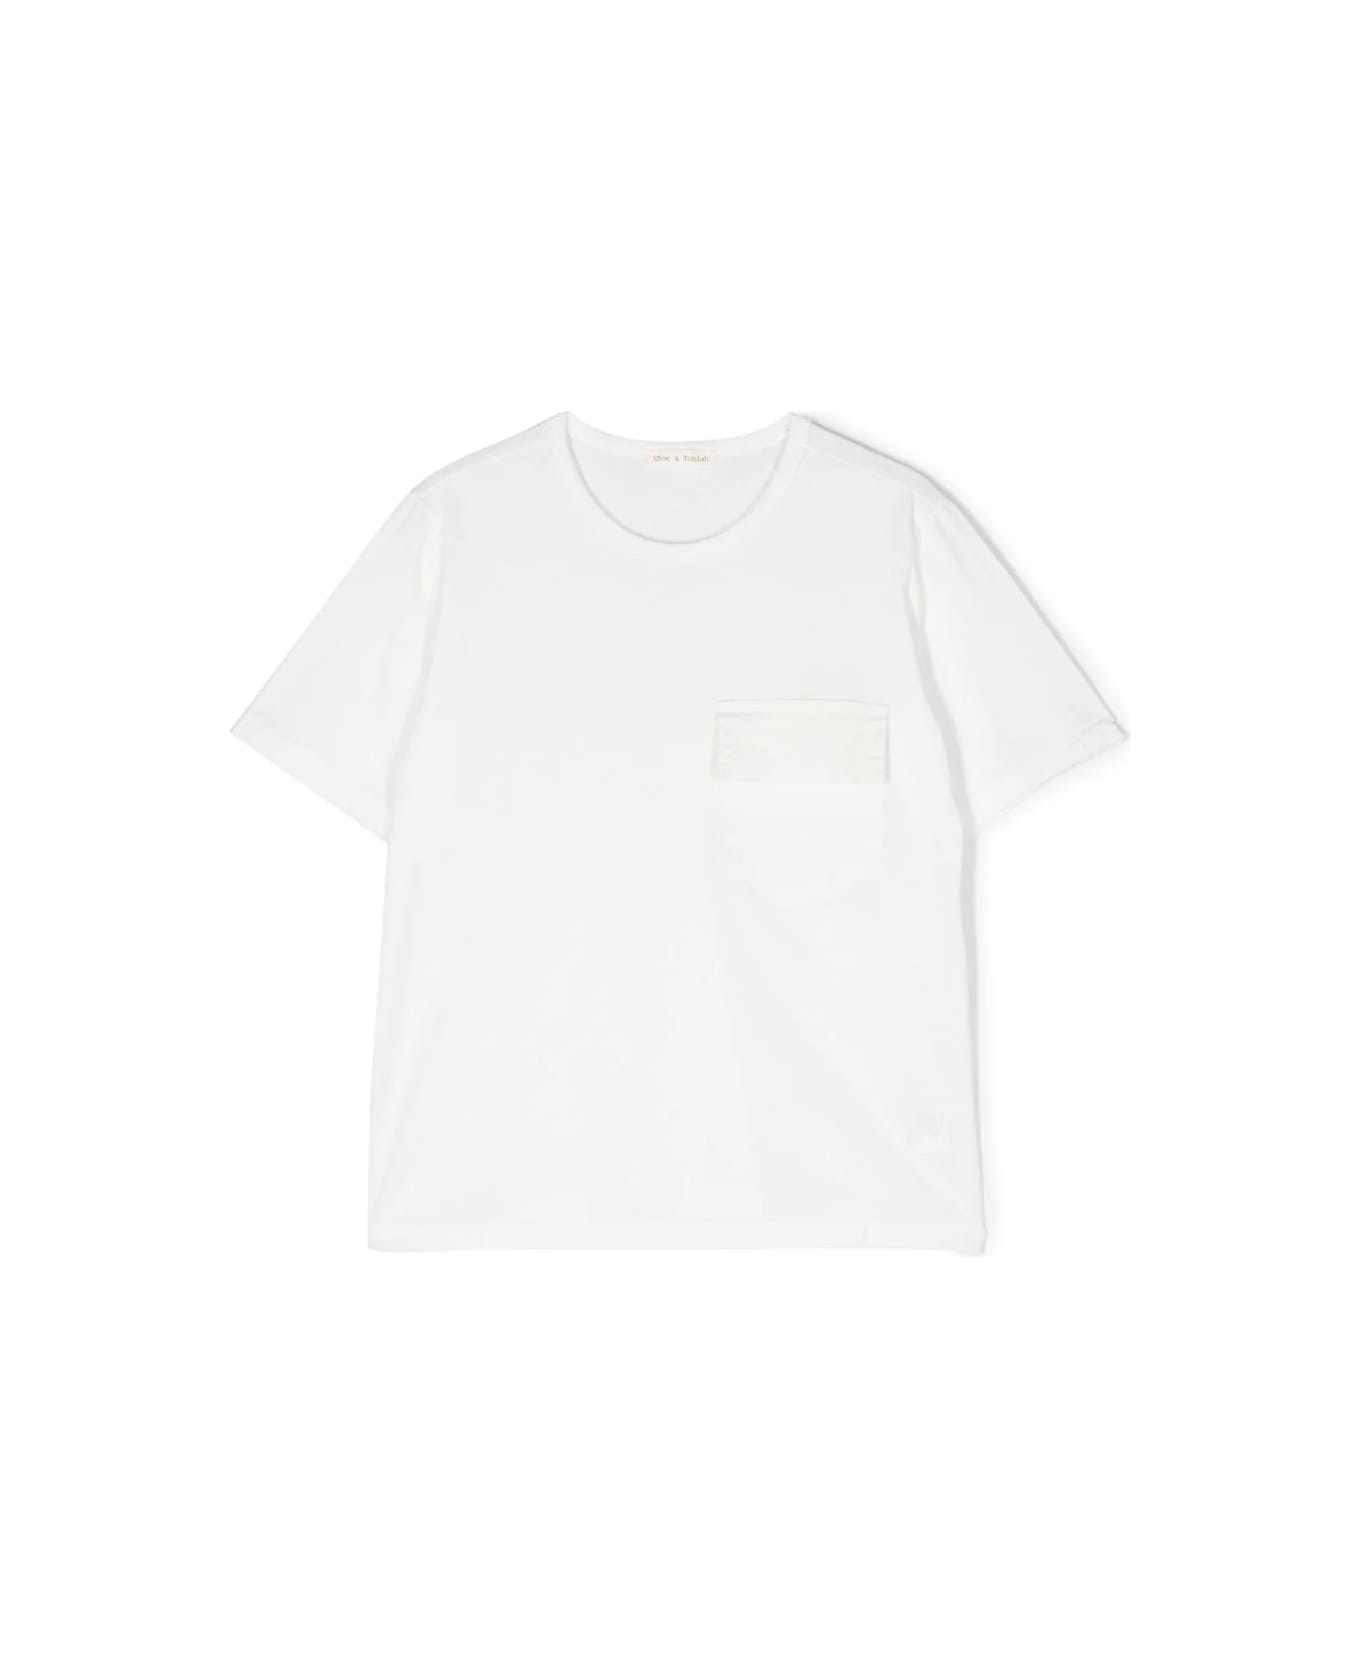 Zhoe & Tobiah T-shirt Bianca - White